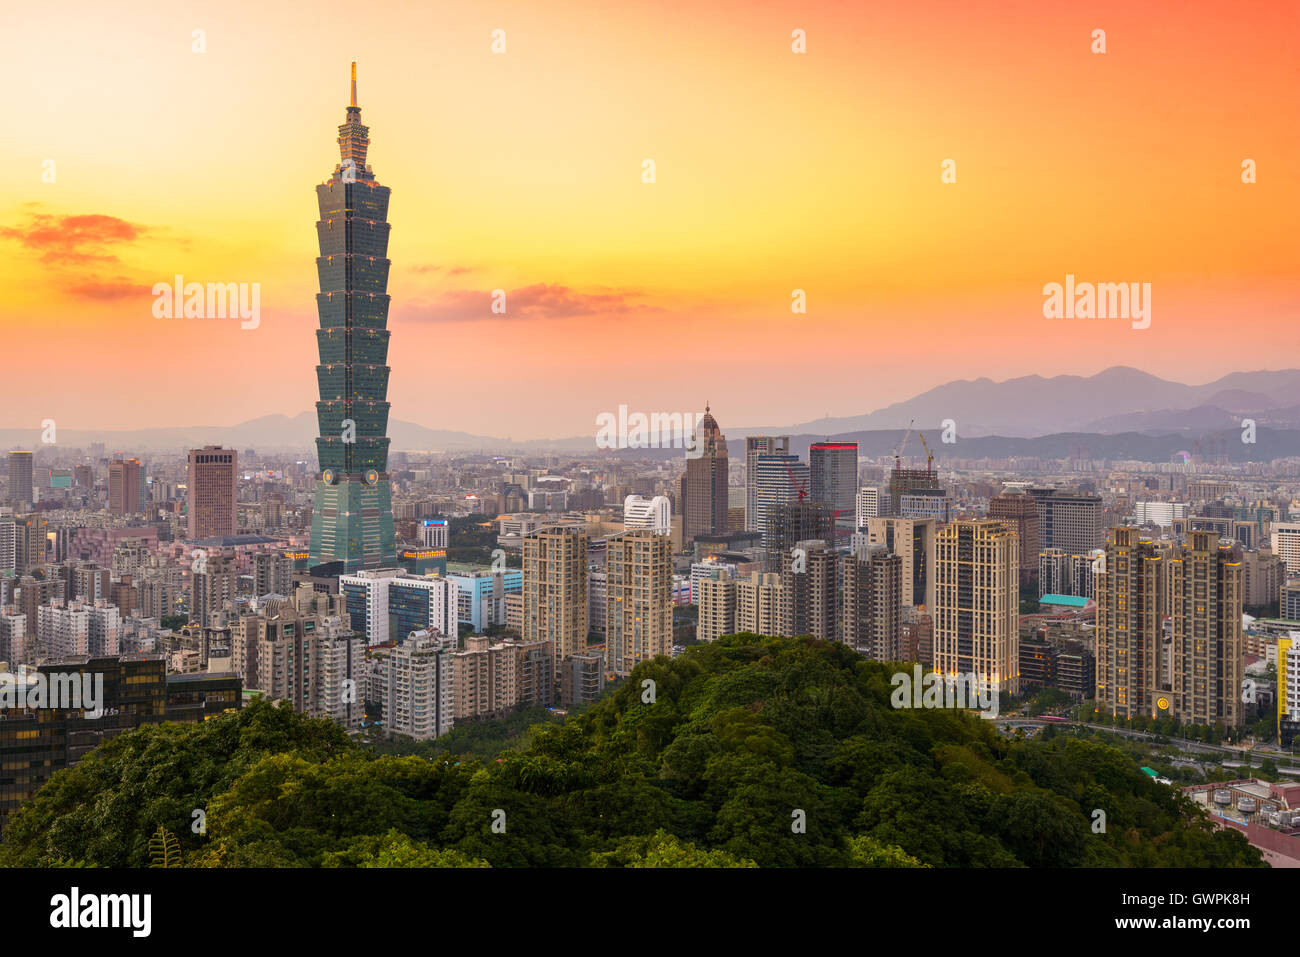 Taipei, Taiwan city skyline at twilight. Stock Photo